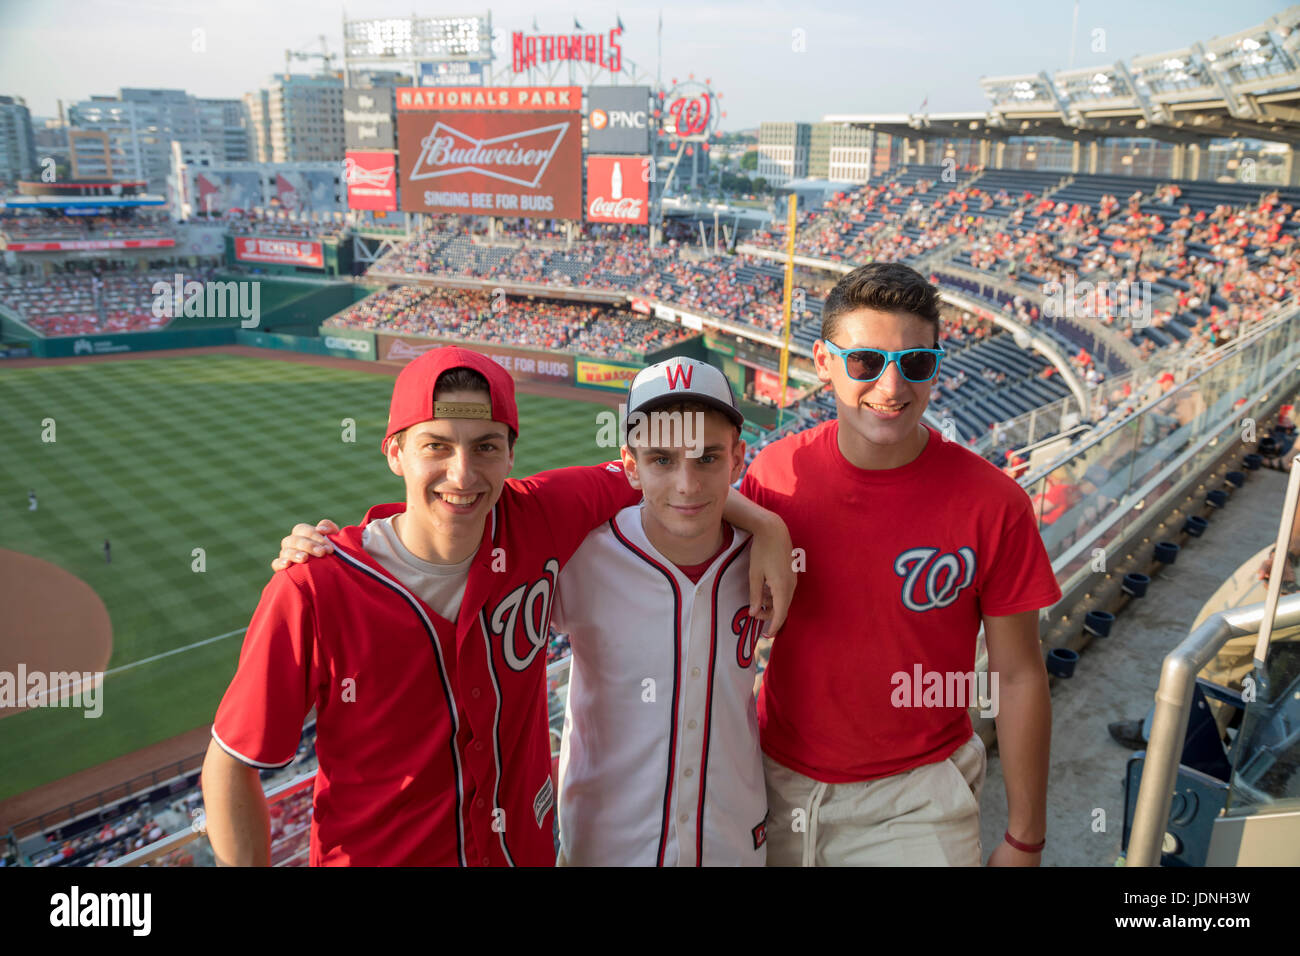 Washington, DC - Tres estudiantes graduados de la escuela secundaria iniciar un viaje de verano a visitar los 30 estadios de béisbol de las Grandes Ligas, comenzando con Washington's Nati Foto de stock